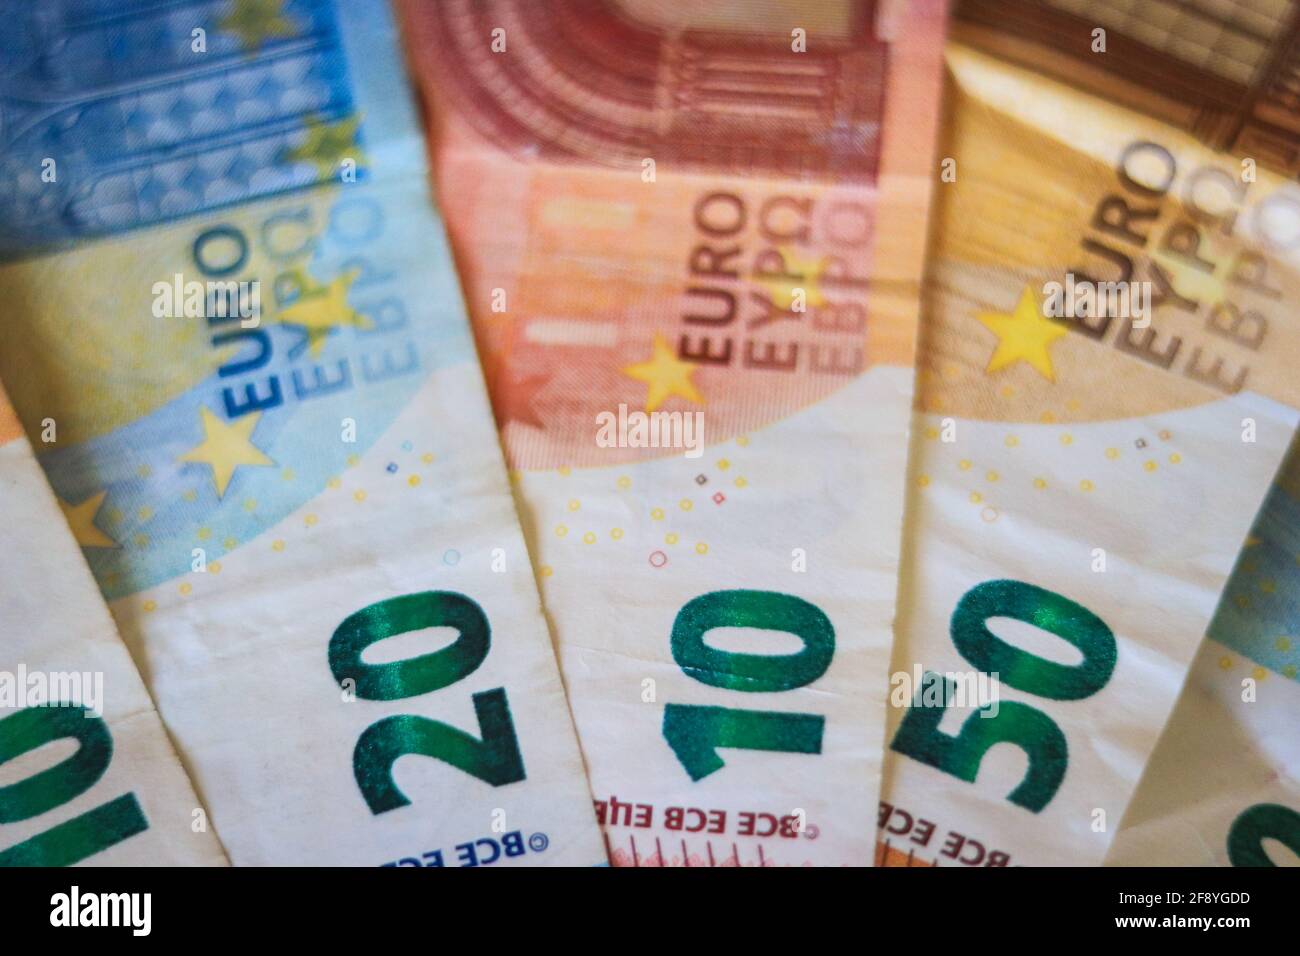 Billetes de banco en euros. Tabla cubierta con billetes de banco. Foto de stock